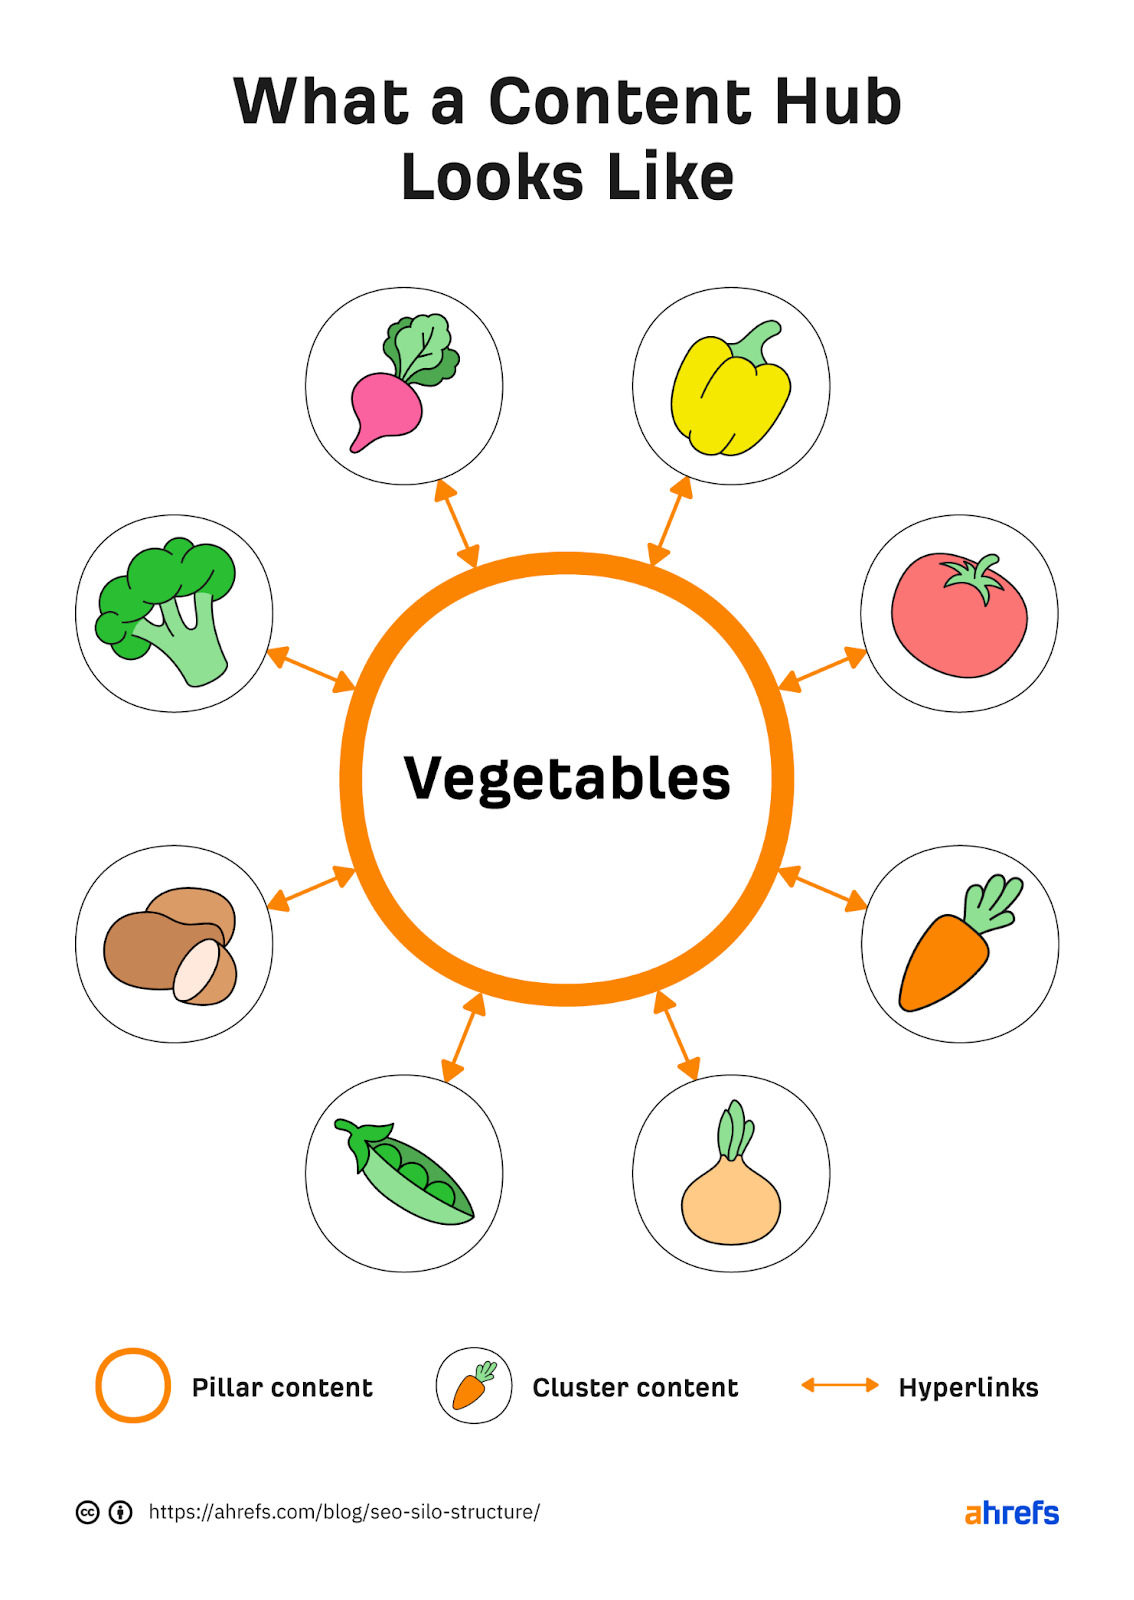 İçerik merkezinin akış şeması: "sebze" merkezdedir ve havuç, pancar gibi farklı sebzelere dallanır. 